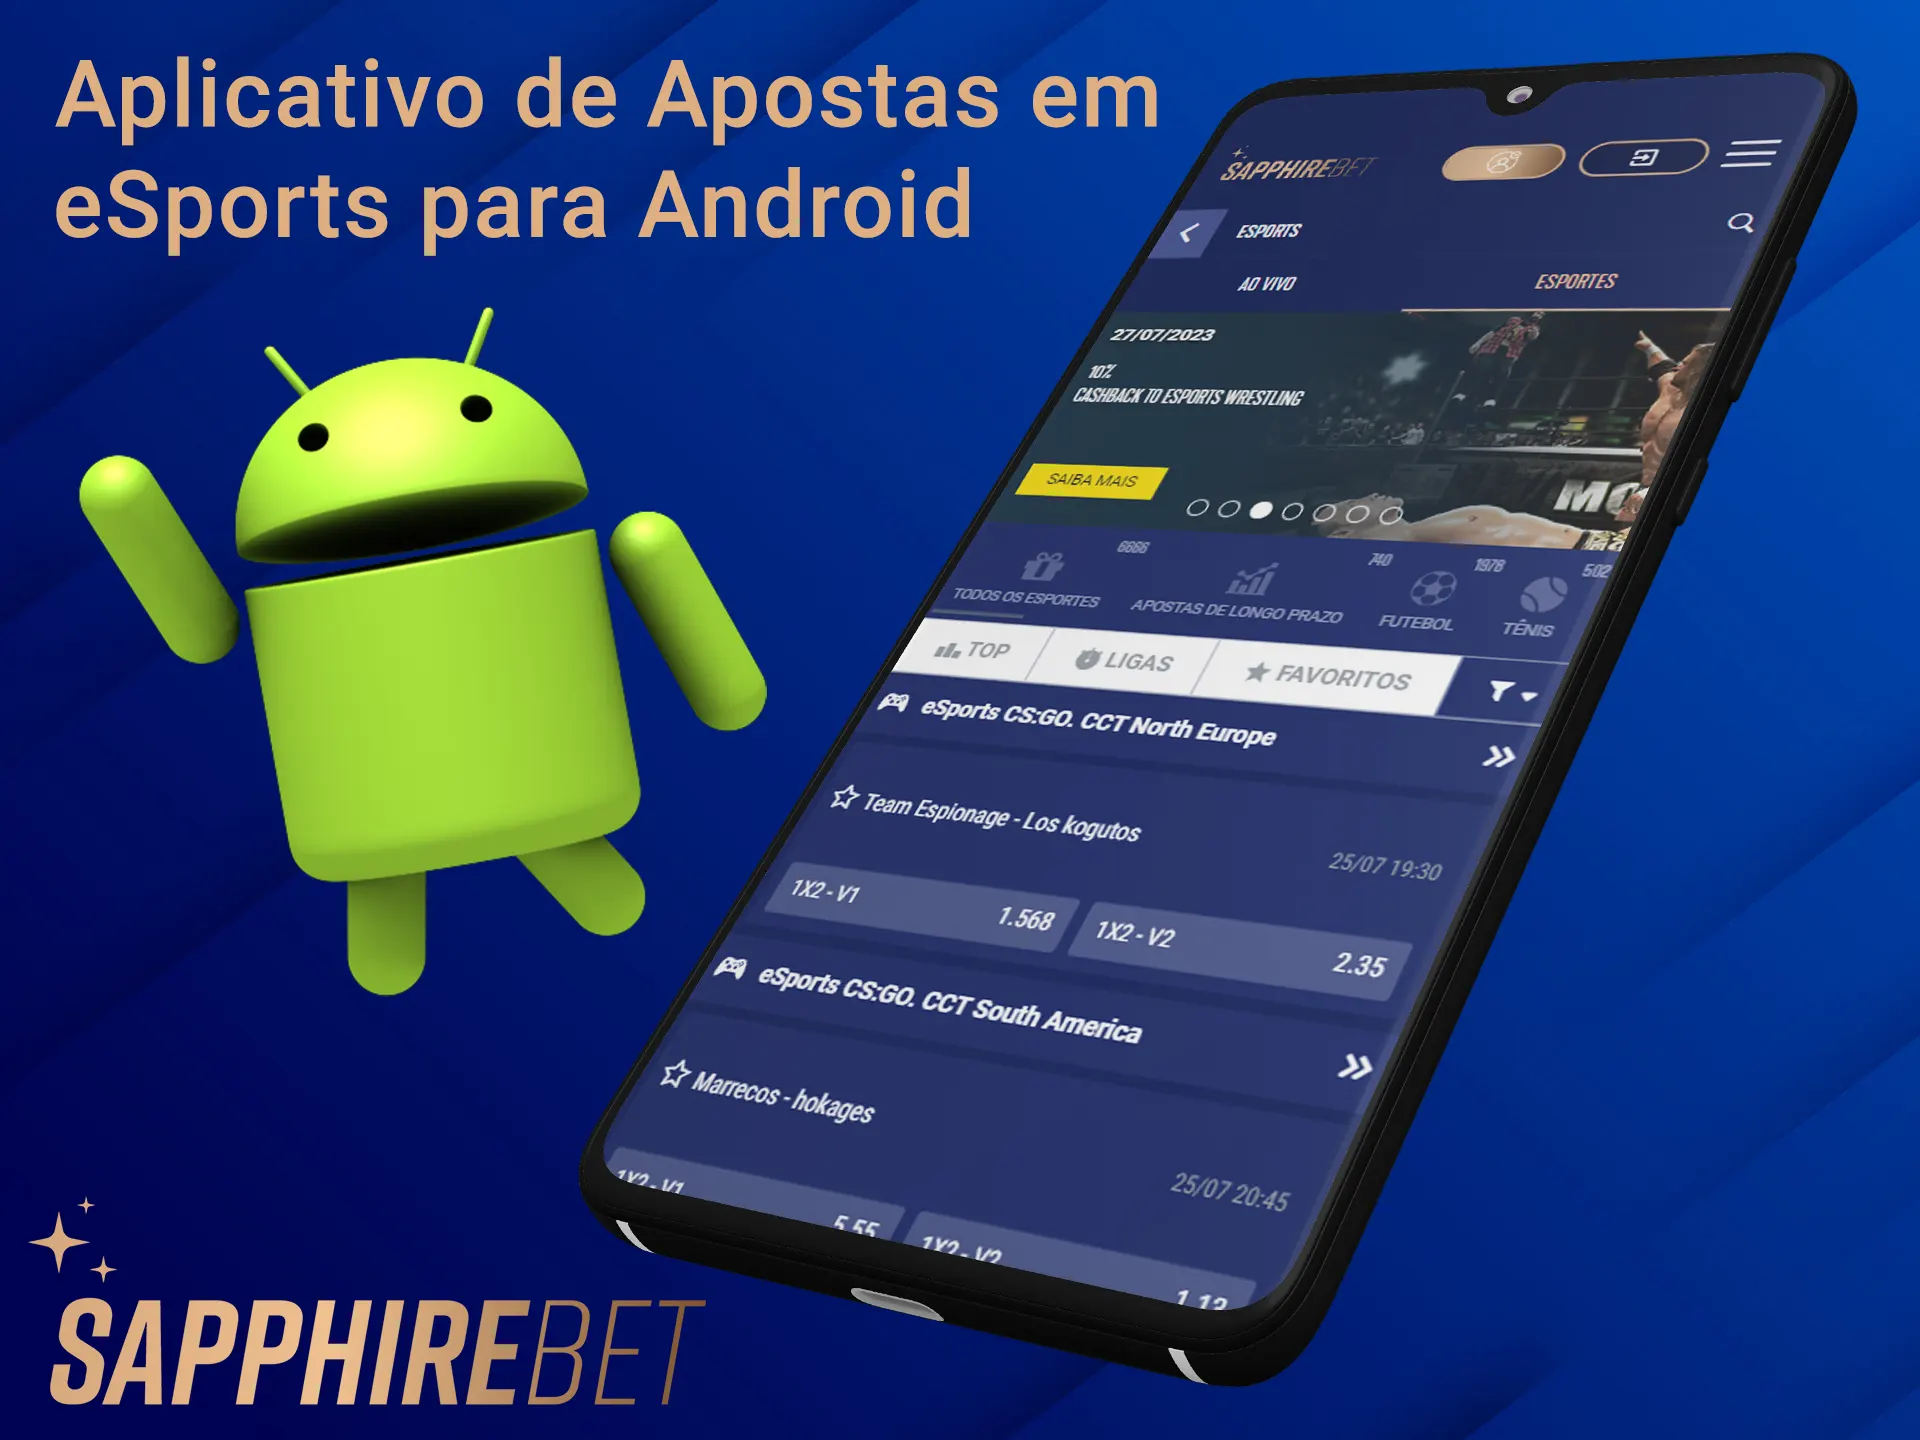 Aposte em esportes eletrônicos usando o aplicativo Sapphirebet para Android.